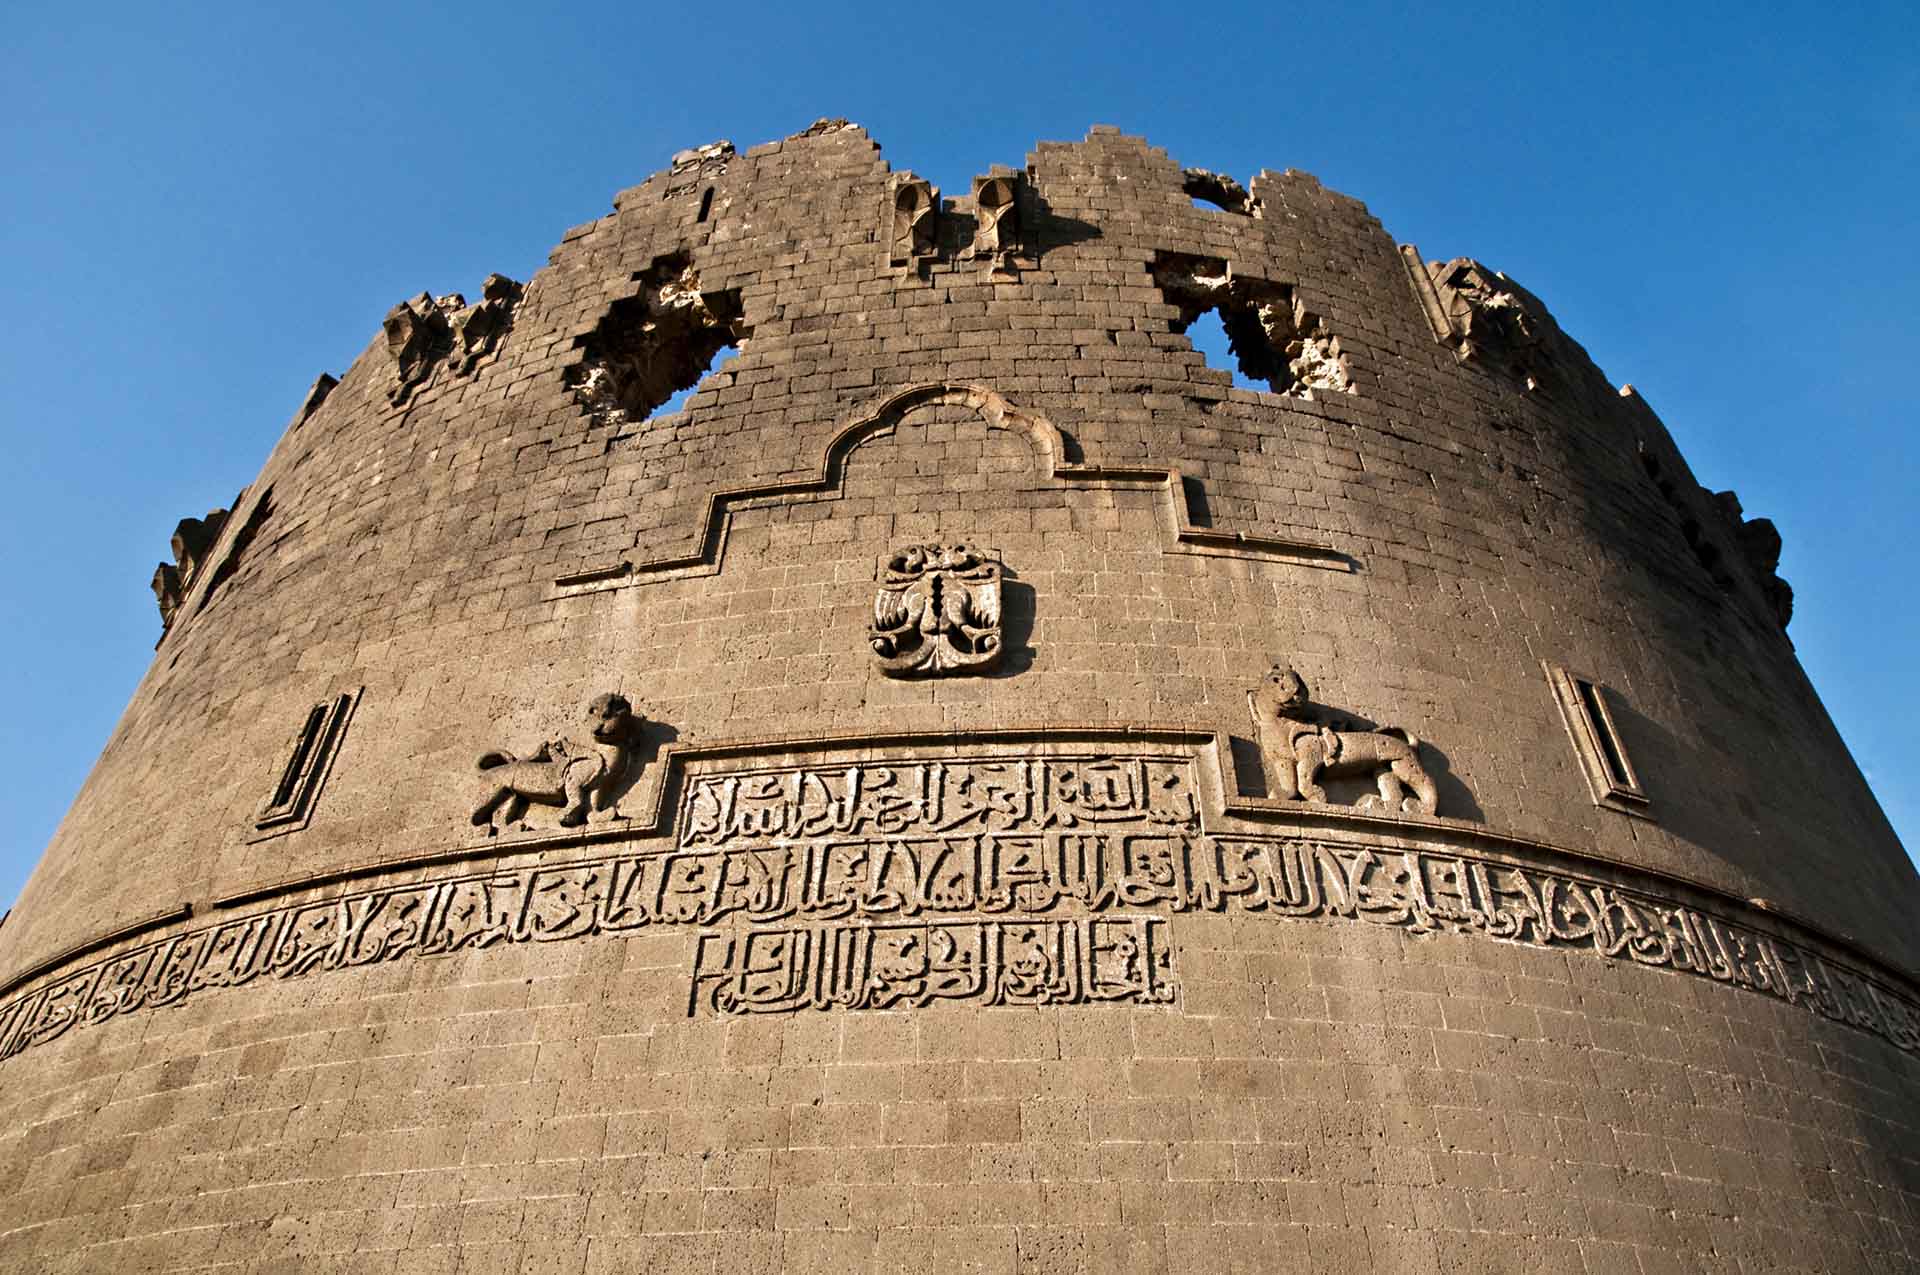 Chiêm ngưỡng vẻ kỳ vĩ của Diyarbakir - Tường thành dài thứ 2 thế giới bị ảnh hưởng bởi động đất tại Thổ Nhĩ Kỳ - Ảnh 10.